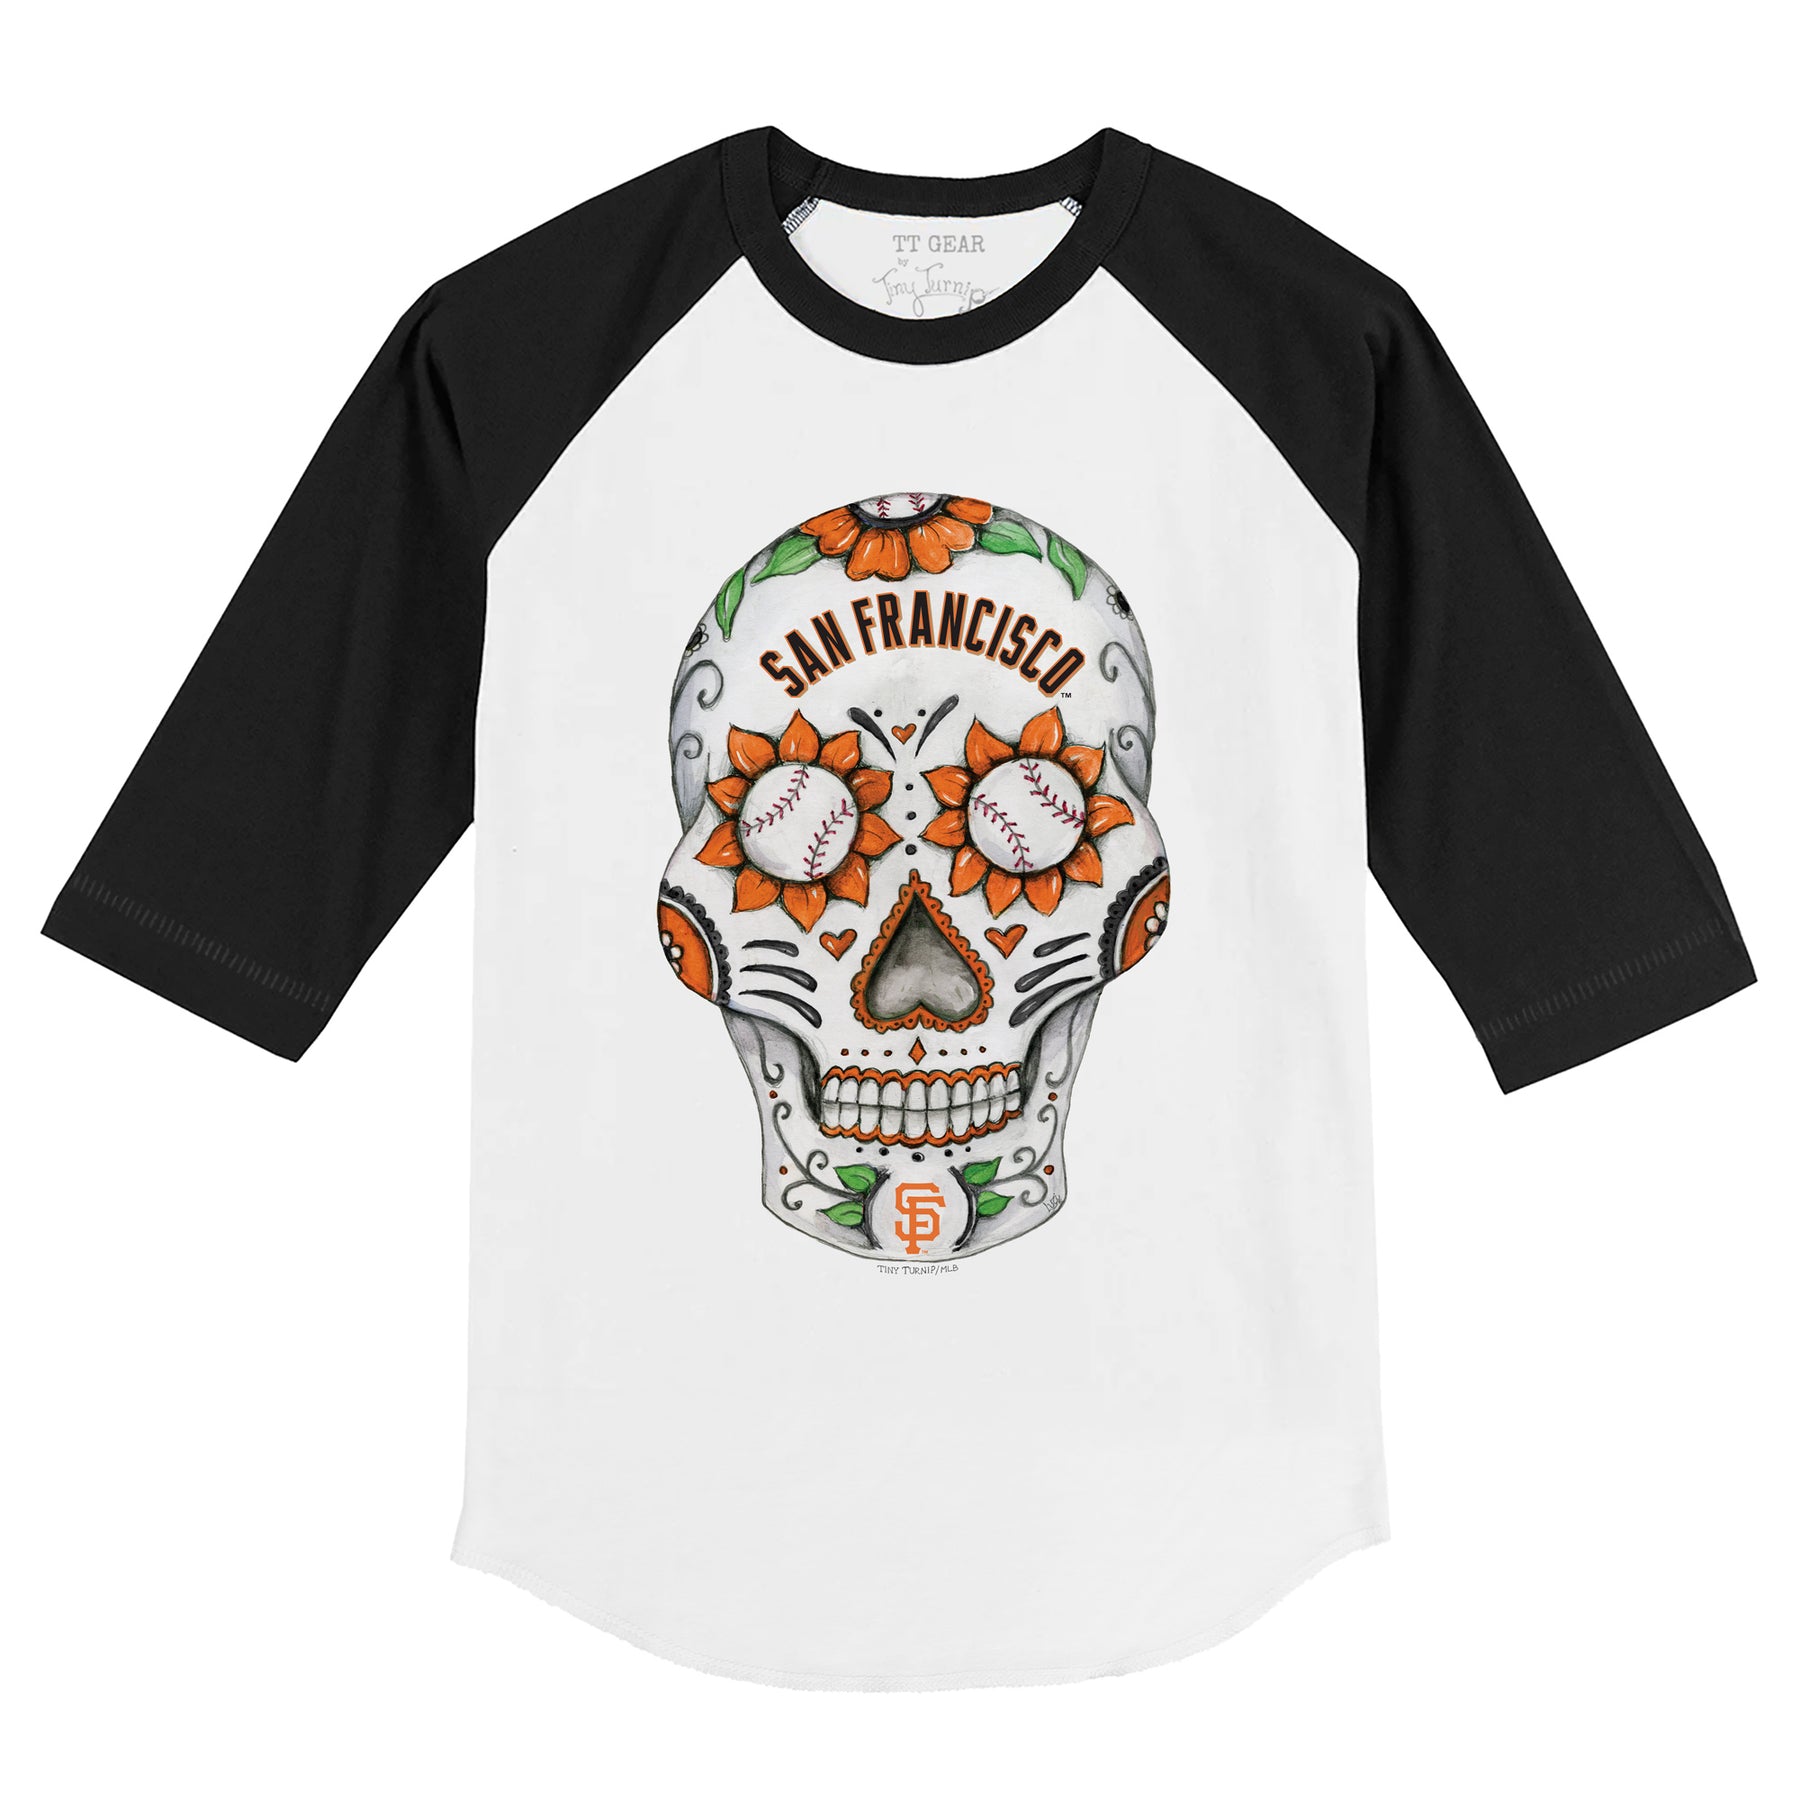 San Francisco Sugar Skull Shirt San Francisco Baseball Shirt 